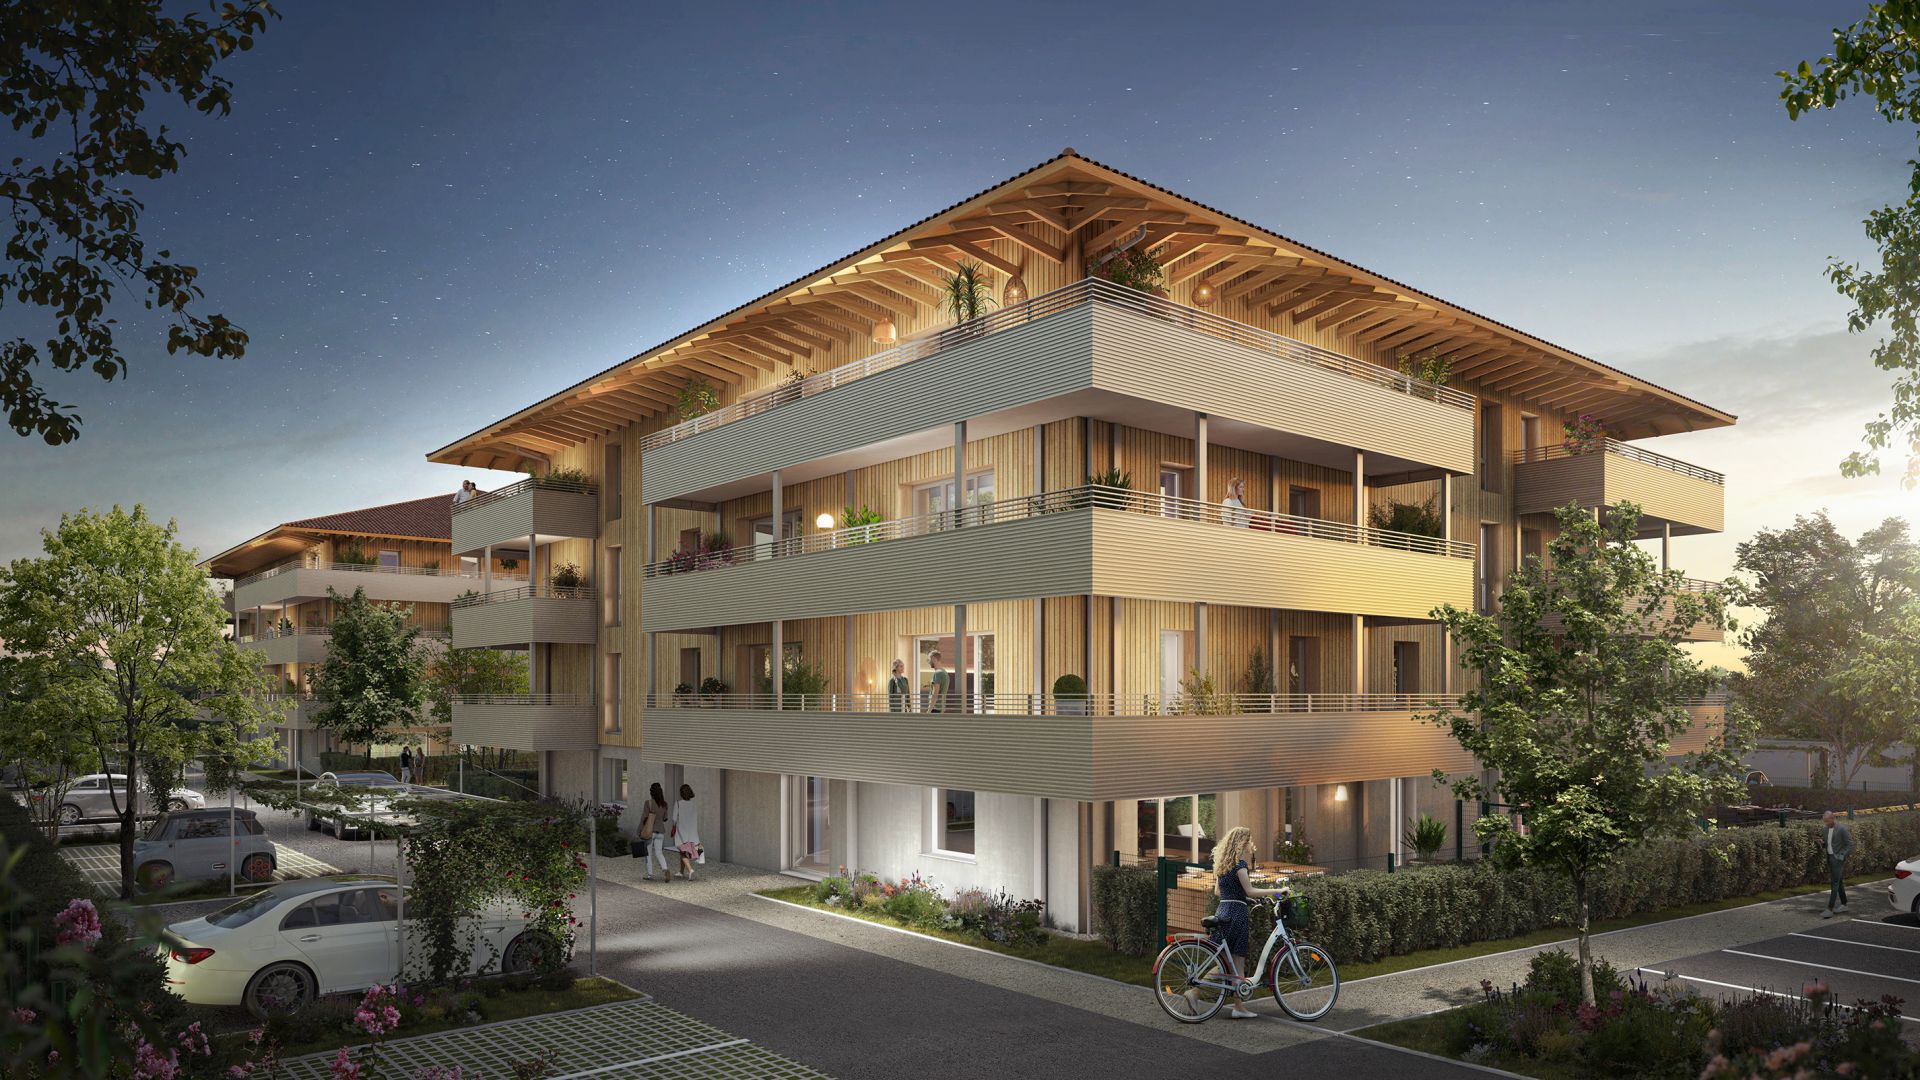 Greencity immobilier - achat appartements neufs du T2 au T3 - Résidence Jardins de Diane - 31170 Tournefeuille